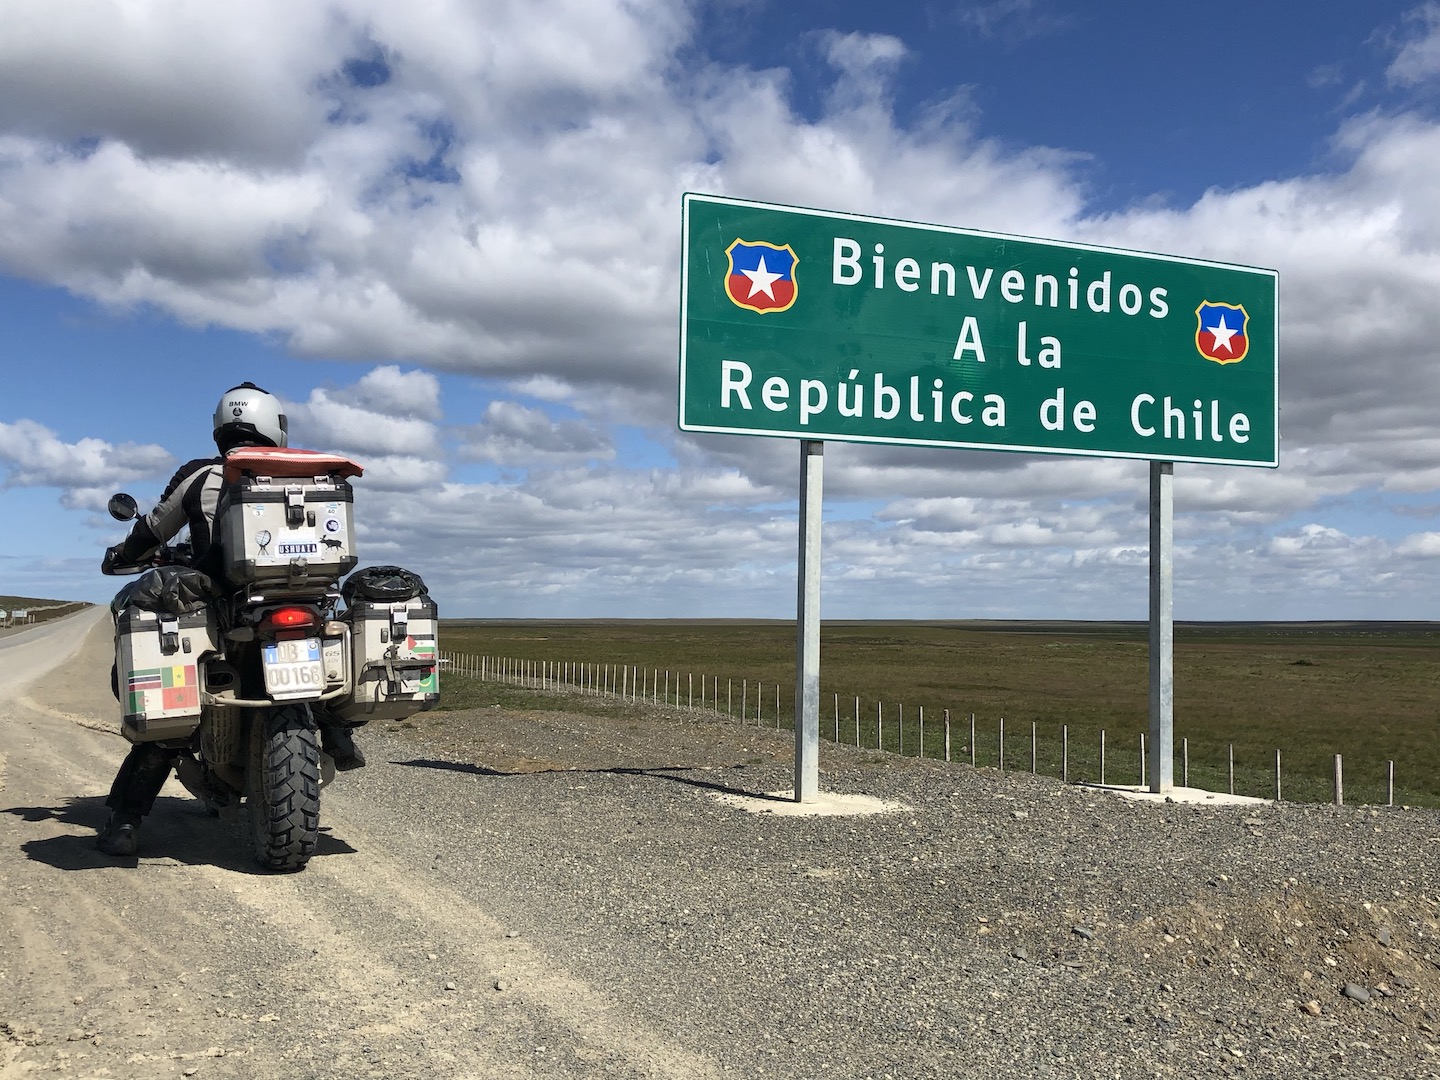 La Ruta 3 attraversa un buon tratto di Patagonia cilena